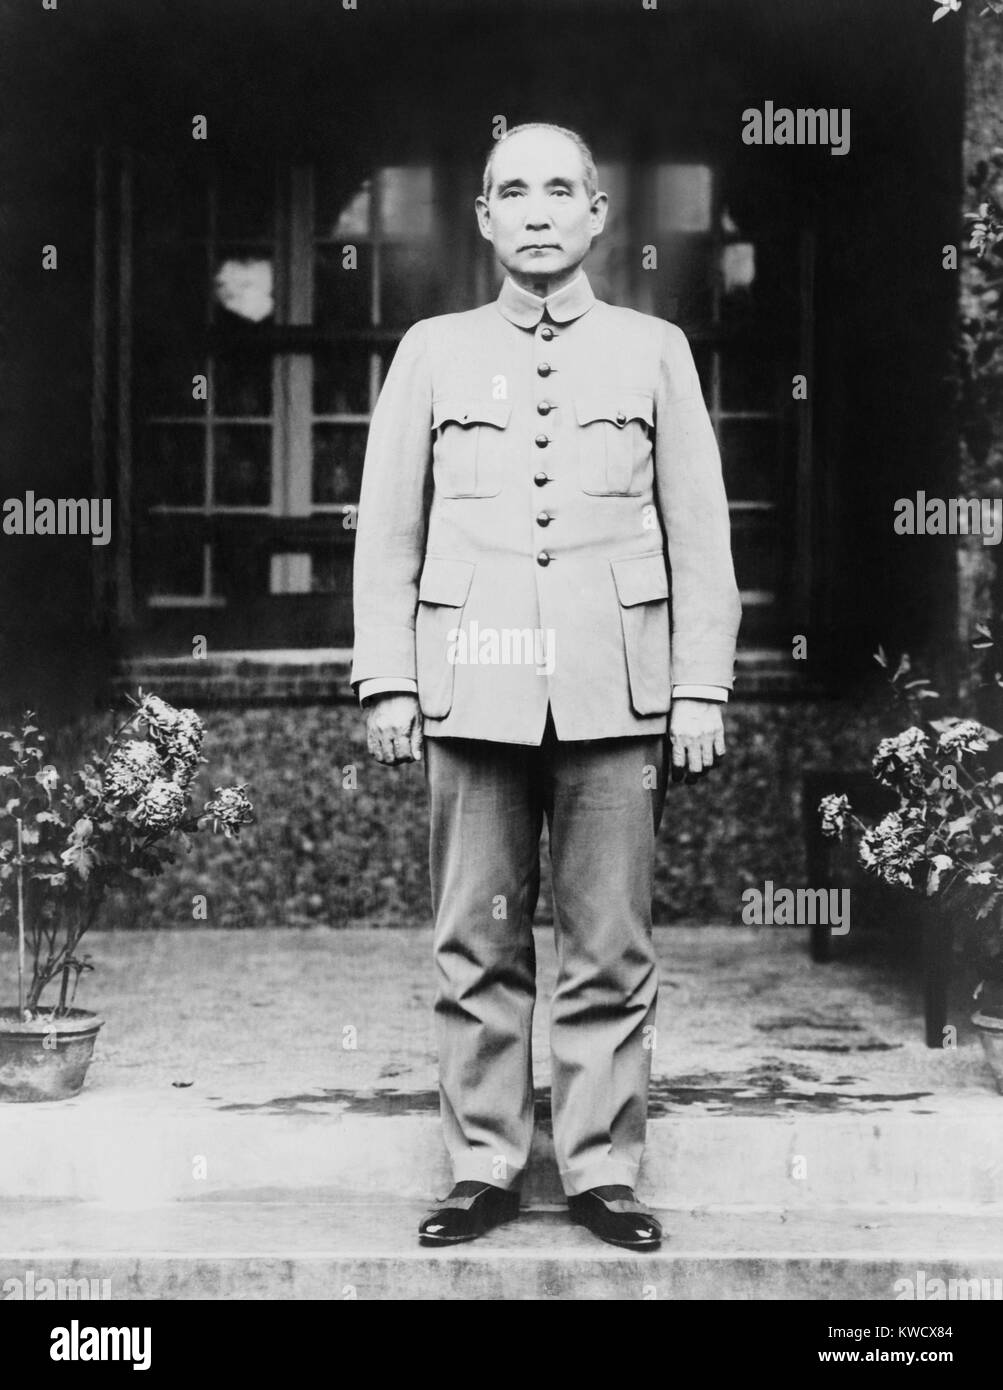 Sun Yat-sen, leader del cantone di governo, c. 1920. Egli fu il primo presidente rivoluzionaria della nuova Repubblica cinese nel 1912, ma a parte a gradini per la più potente di Yuan Shi Kai. Indossa una tuta di Zhongshan, chiamato più tardi una tuta di Mao che combina elementi di uniformi militari, studente cinese di uniformi e di stile occidentale (tute BSLOC 2017 2 71) Foto Stock